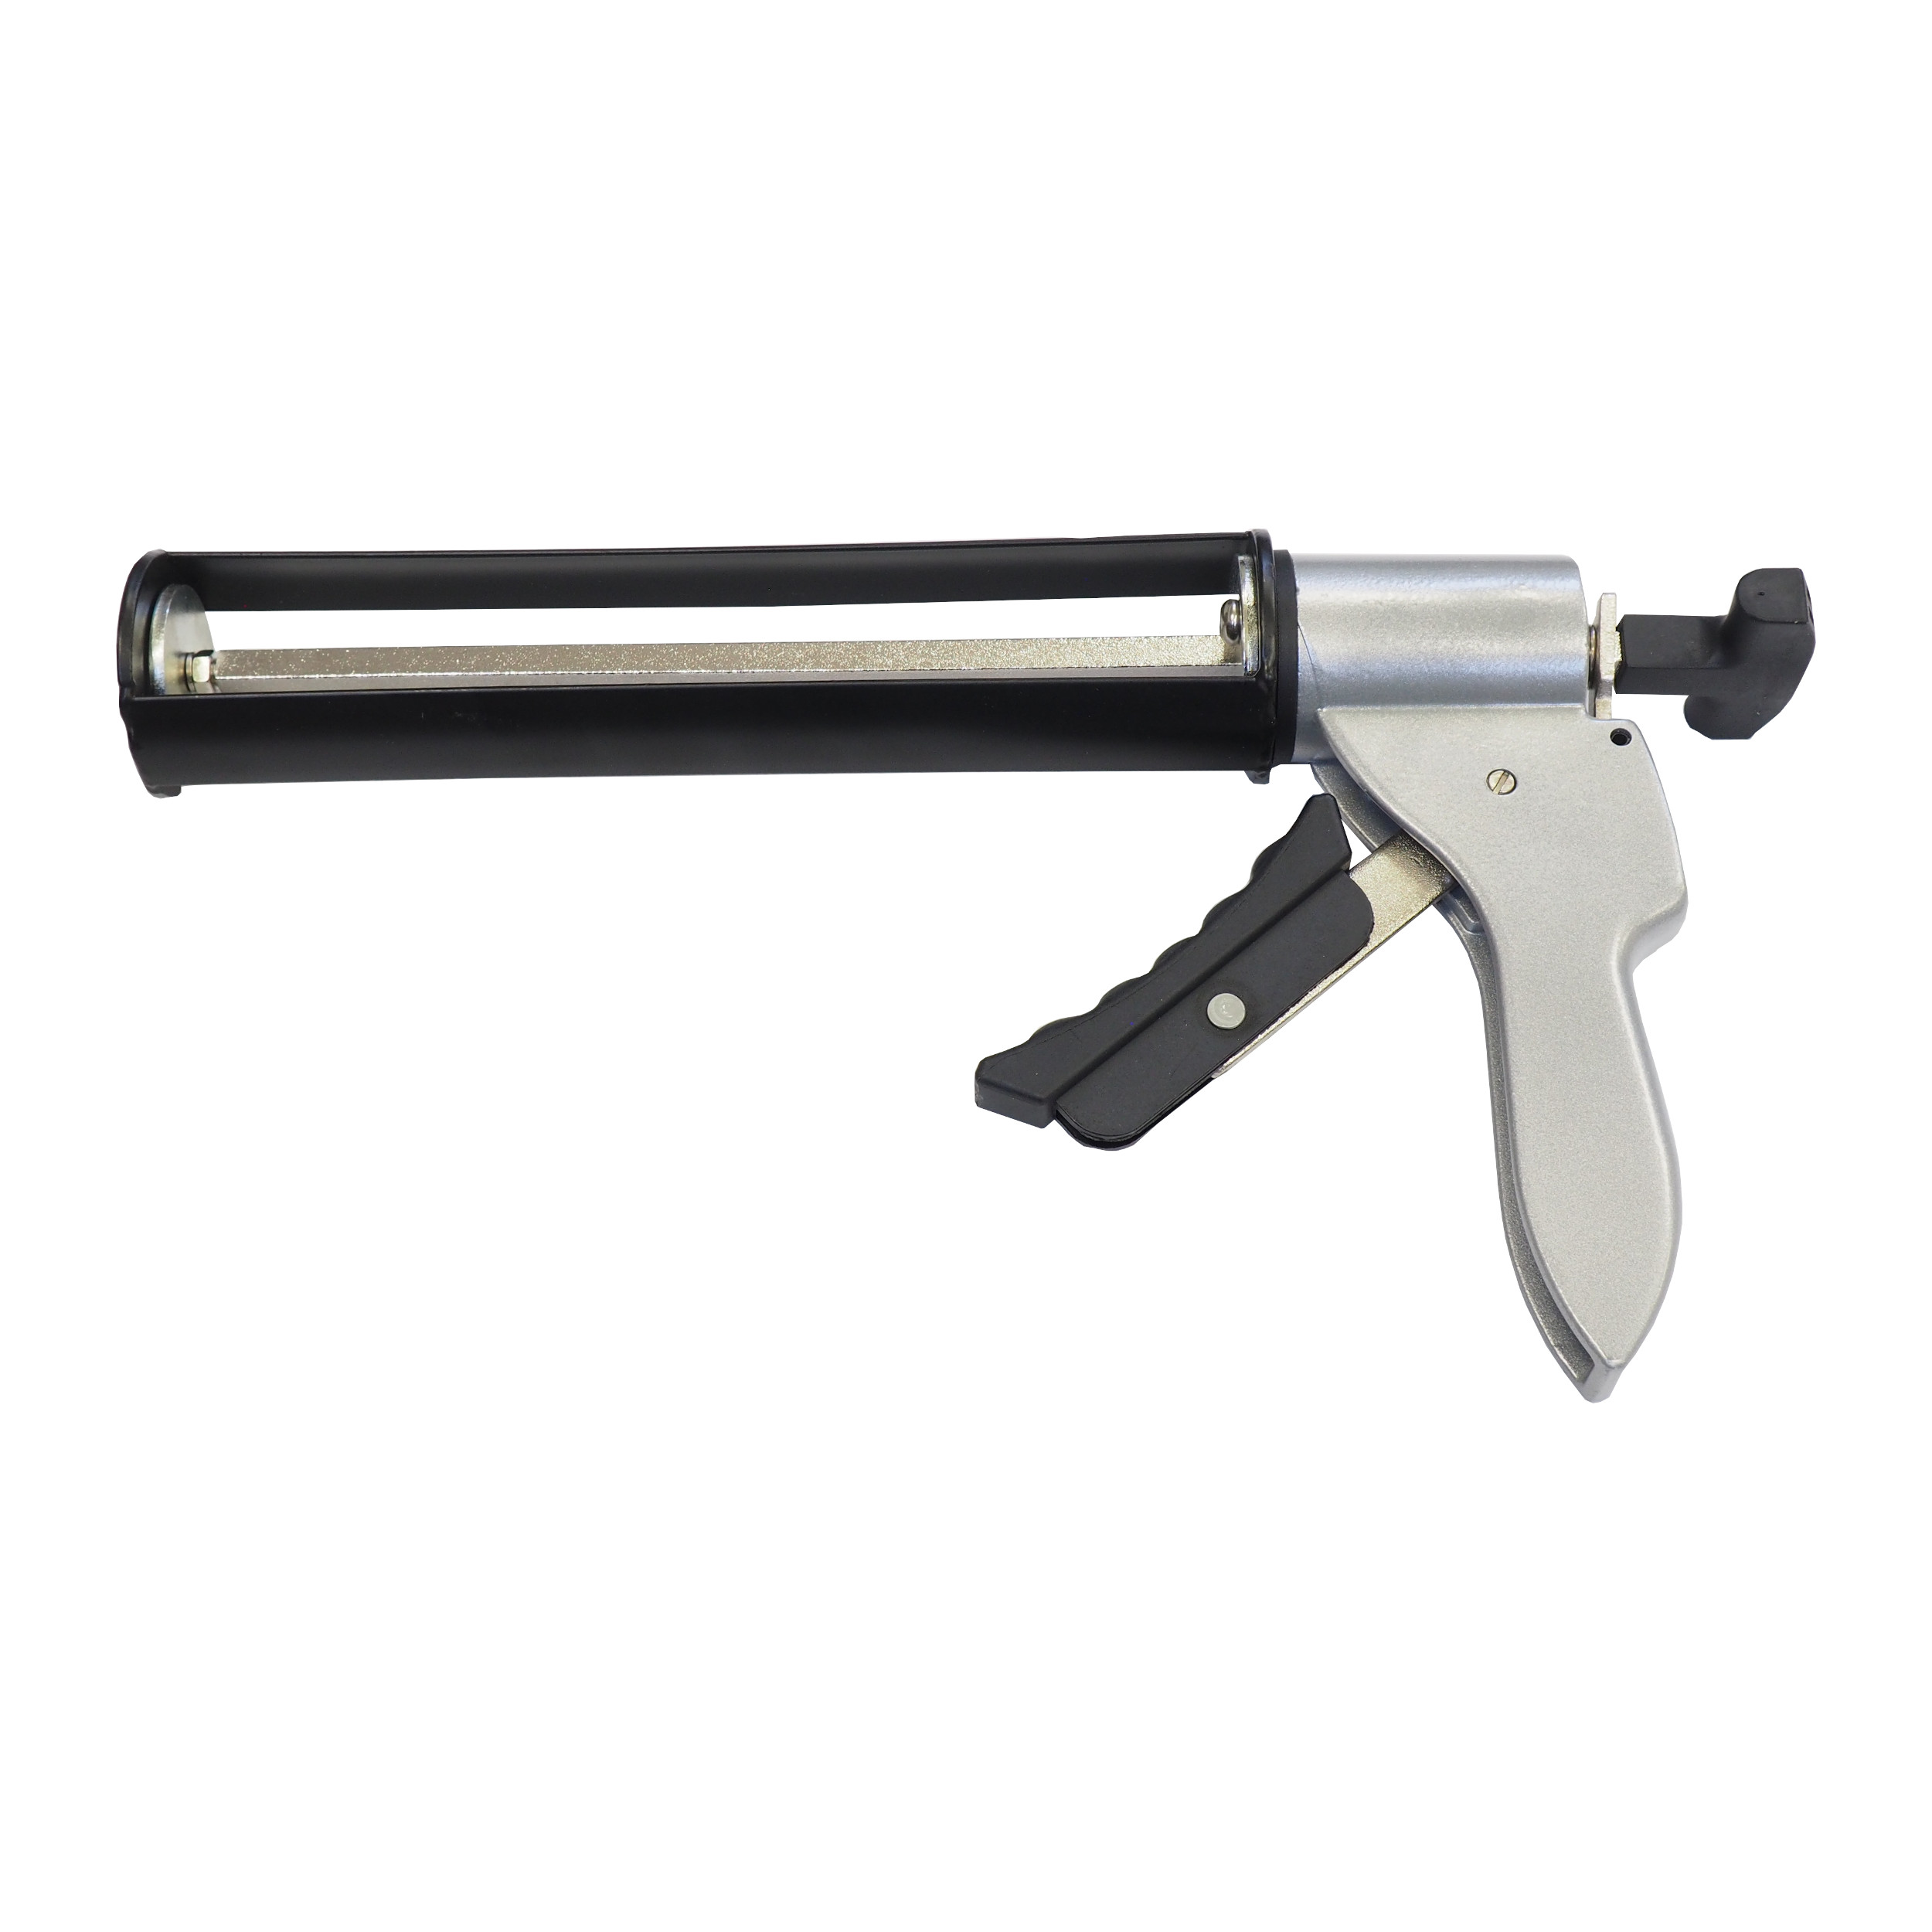 TOPTRADE pistole vytlačovací, s výtlačnou silou do 4000N, 310 ml 1.02 Kg TOP Sklad4 300116 50